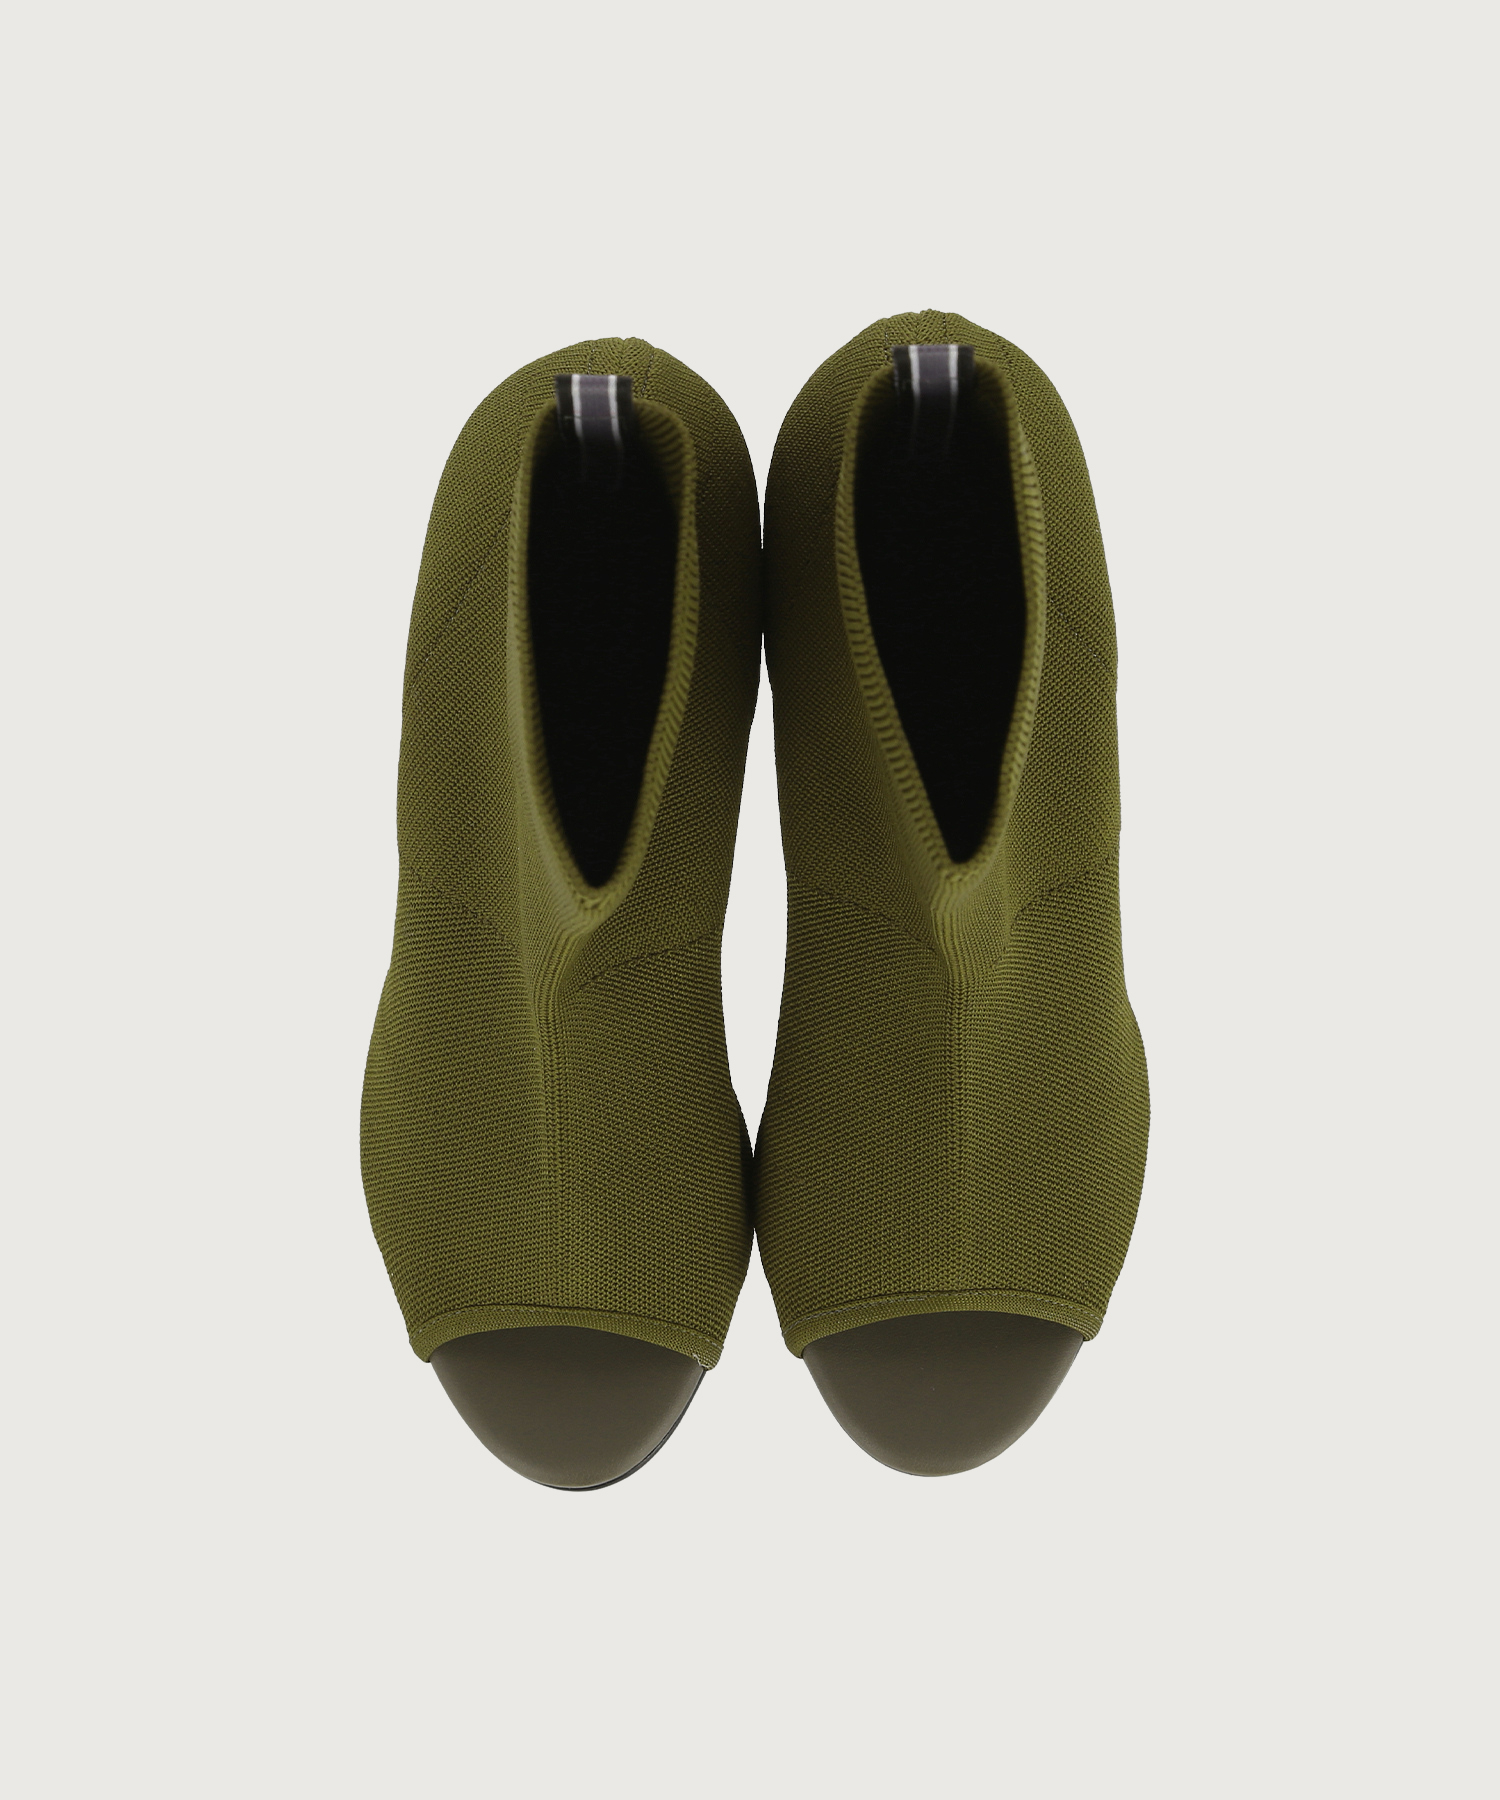 Sandal Boots Olive